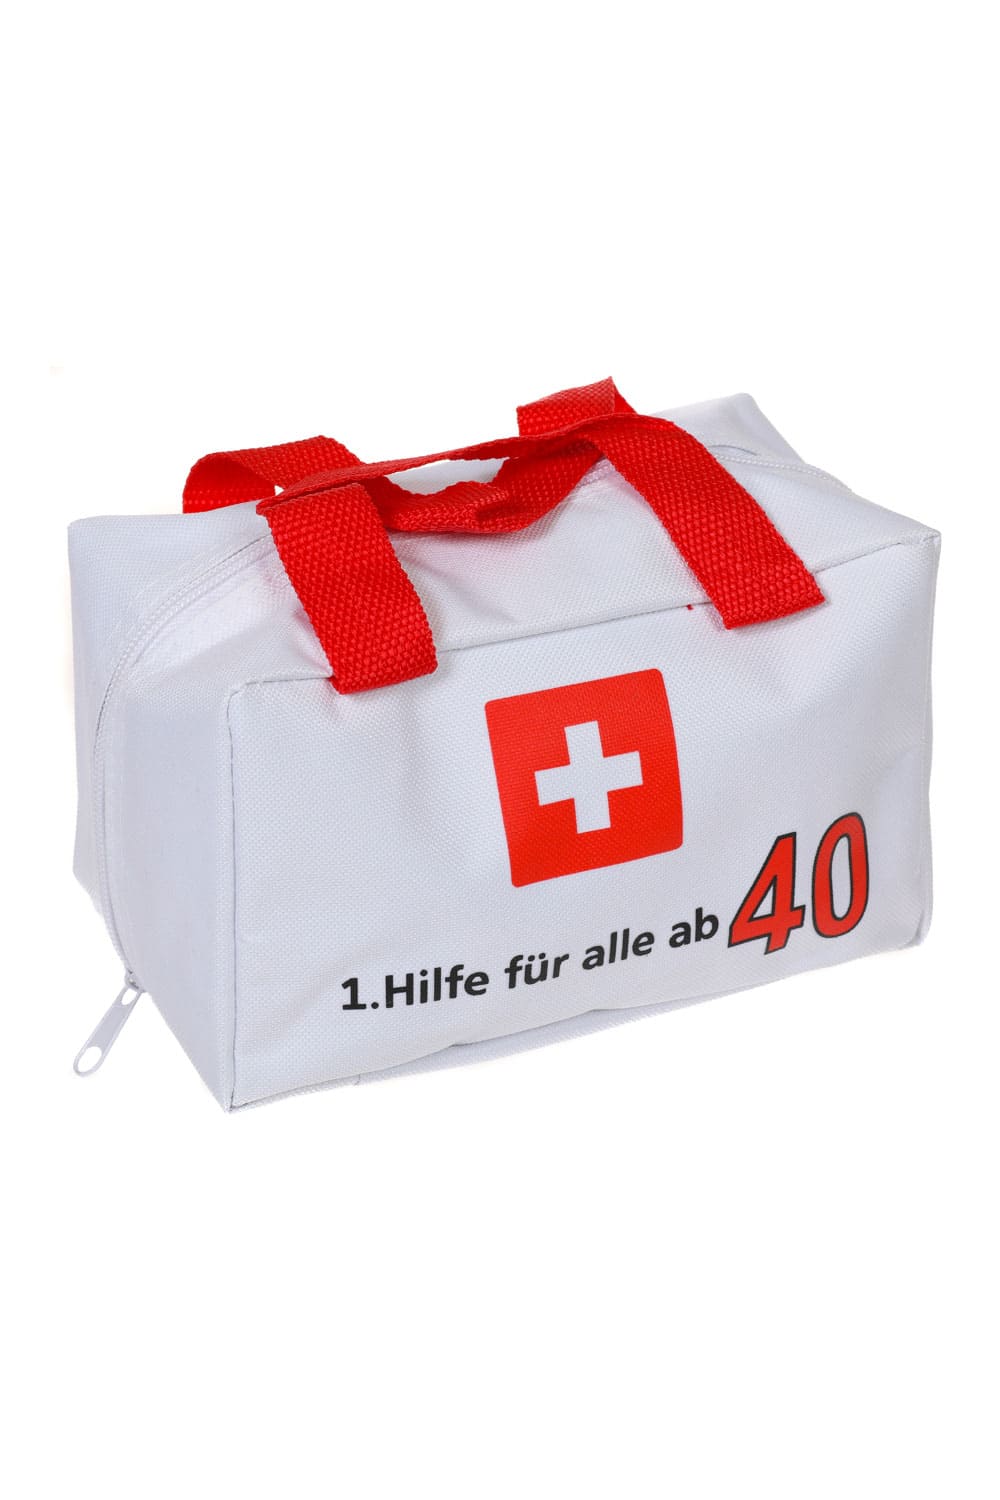 Erste Hilfe Tasche 40. Geburtstag  Witzige Geschenk Verpackung – Geschenk  Insel